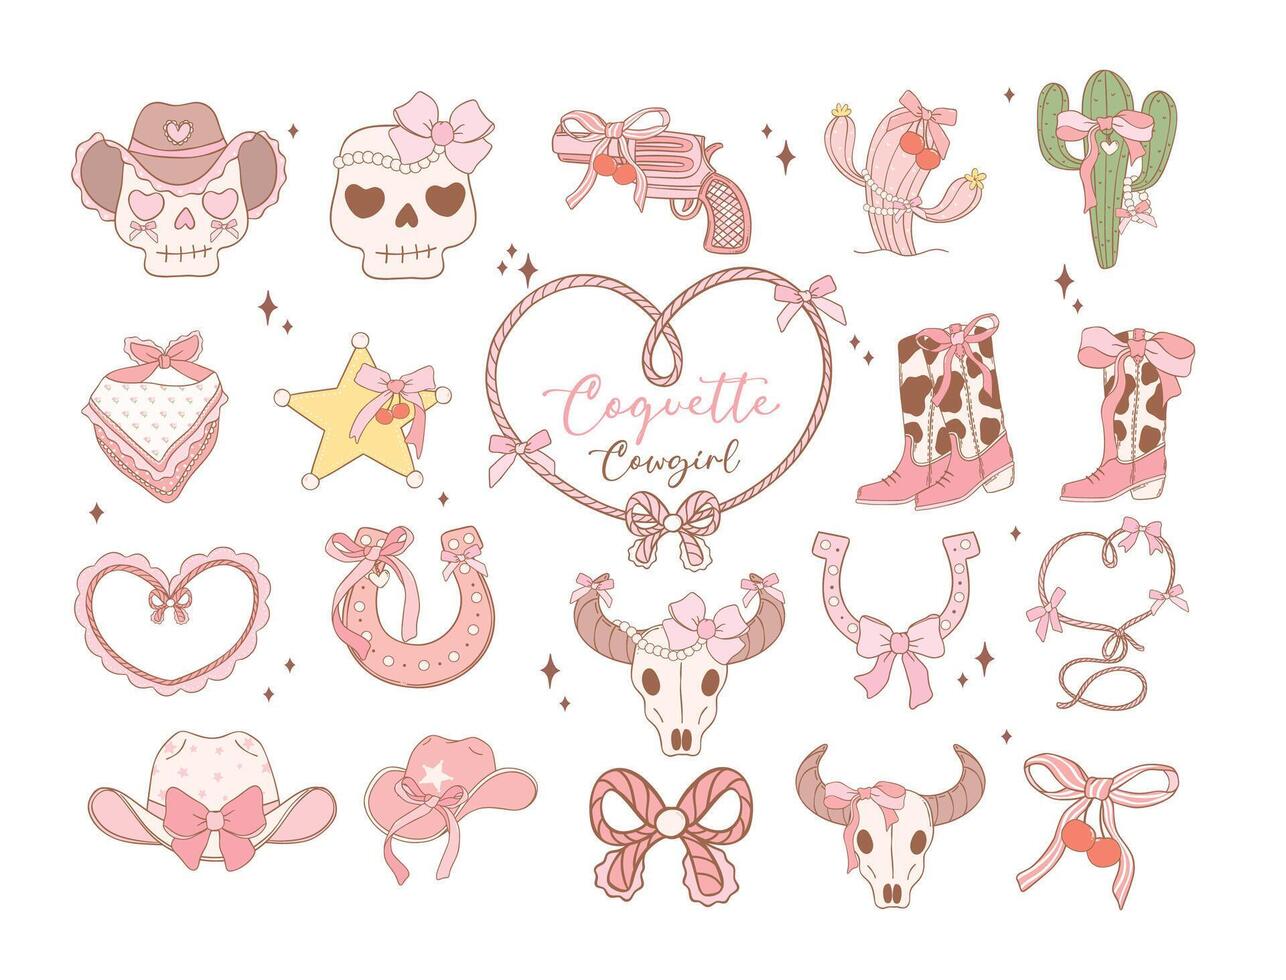 kokett cowgirl rosa band rosett tecknad serie klotter trendig samling. lekfull och nyckfull illustration. vektor